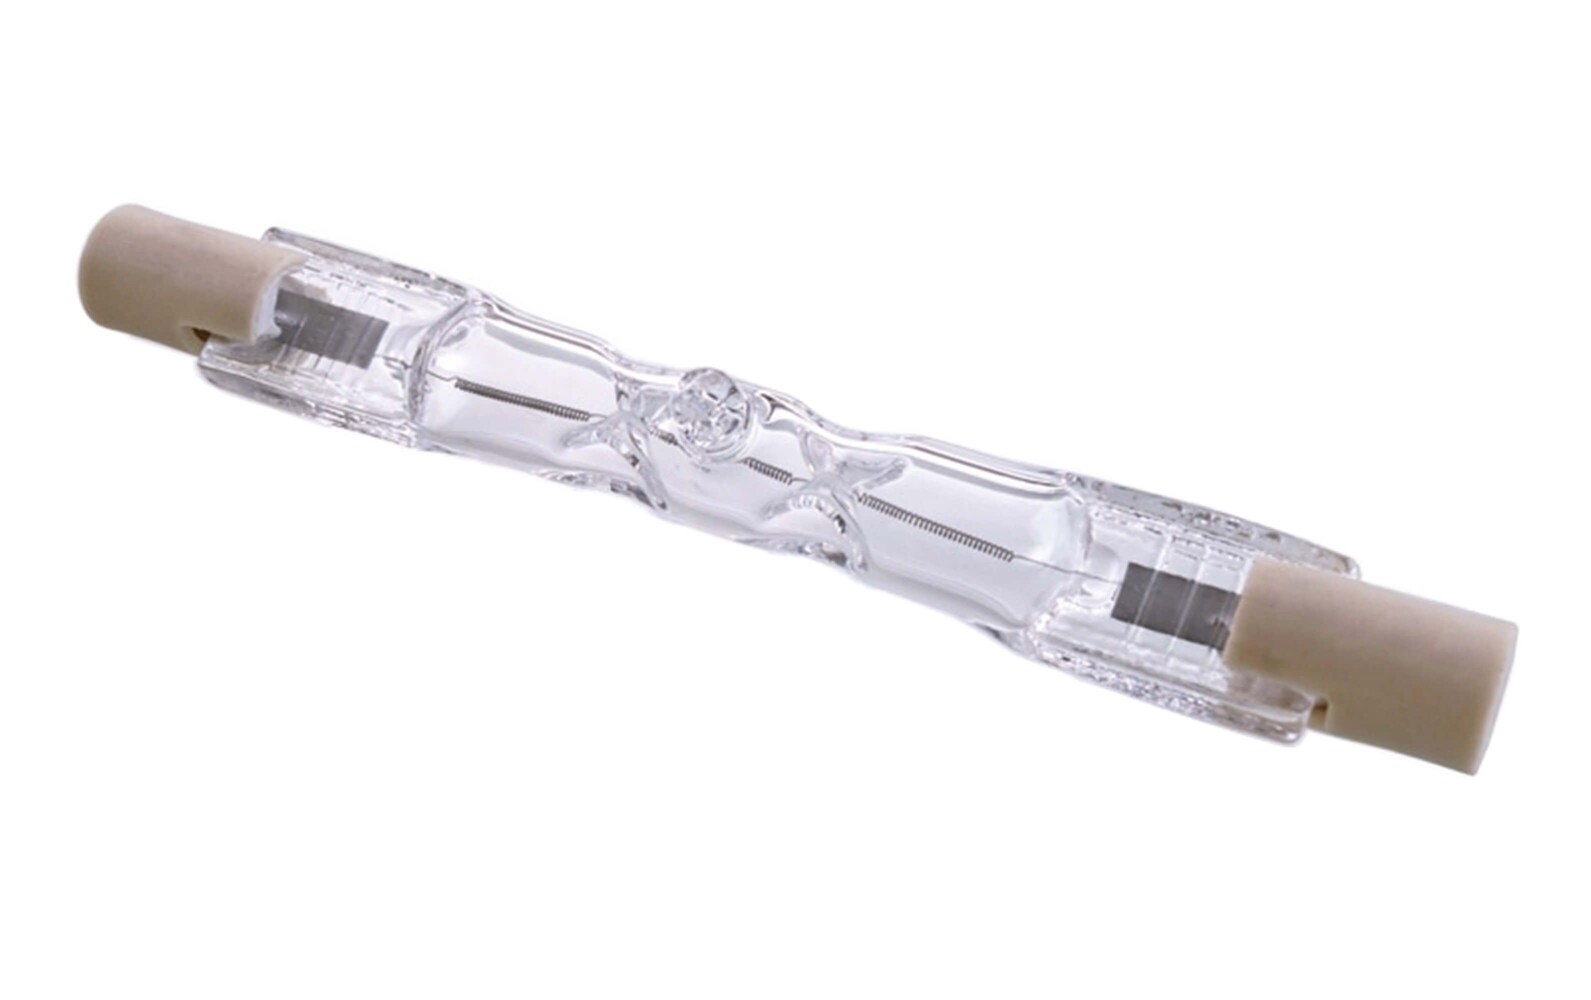 Hochwertiges Osram Leuchtmittel mit Halogen Technologie, 230.00 W, R7S 118mm, ideal für 220 - 240V AC 50 - 60Hz Beleuchtungssysteme